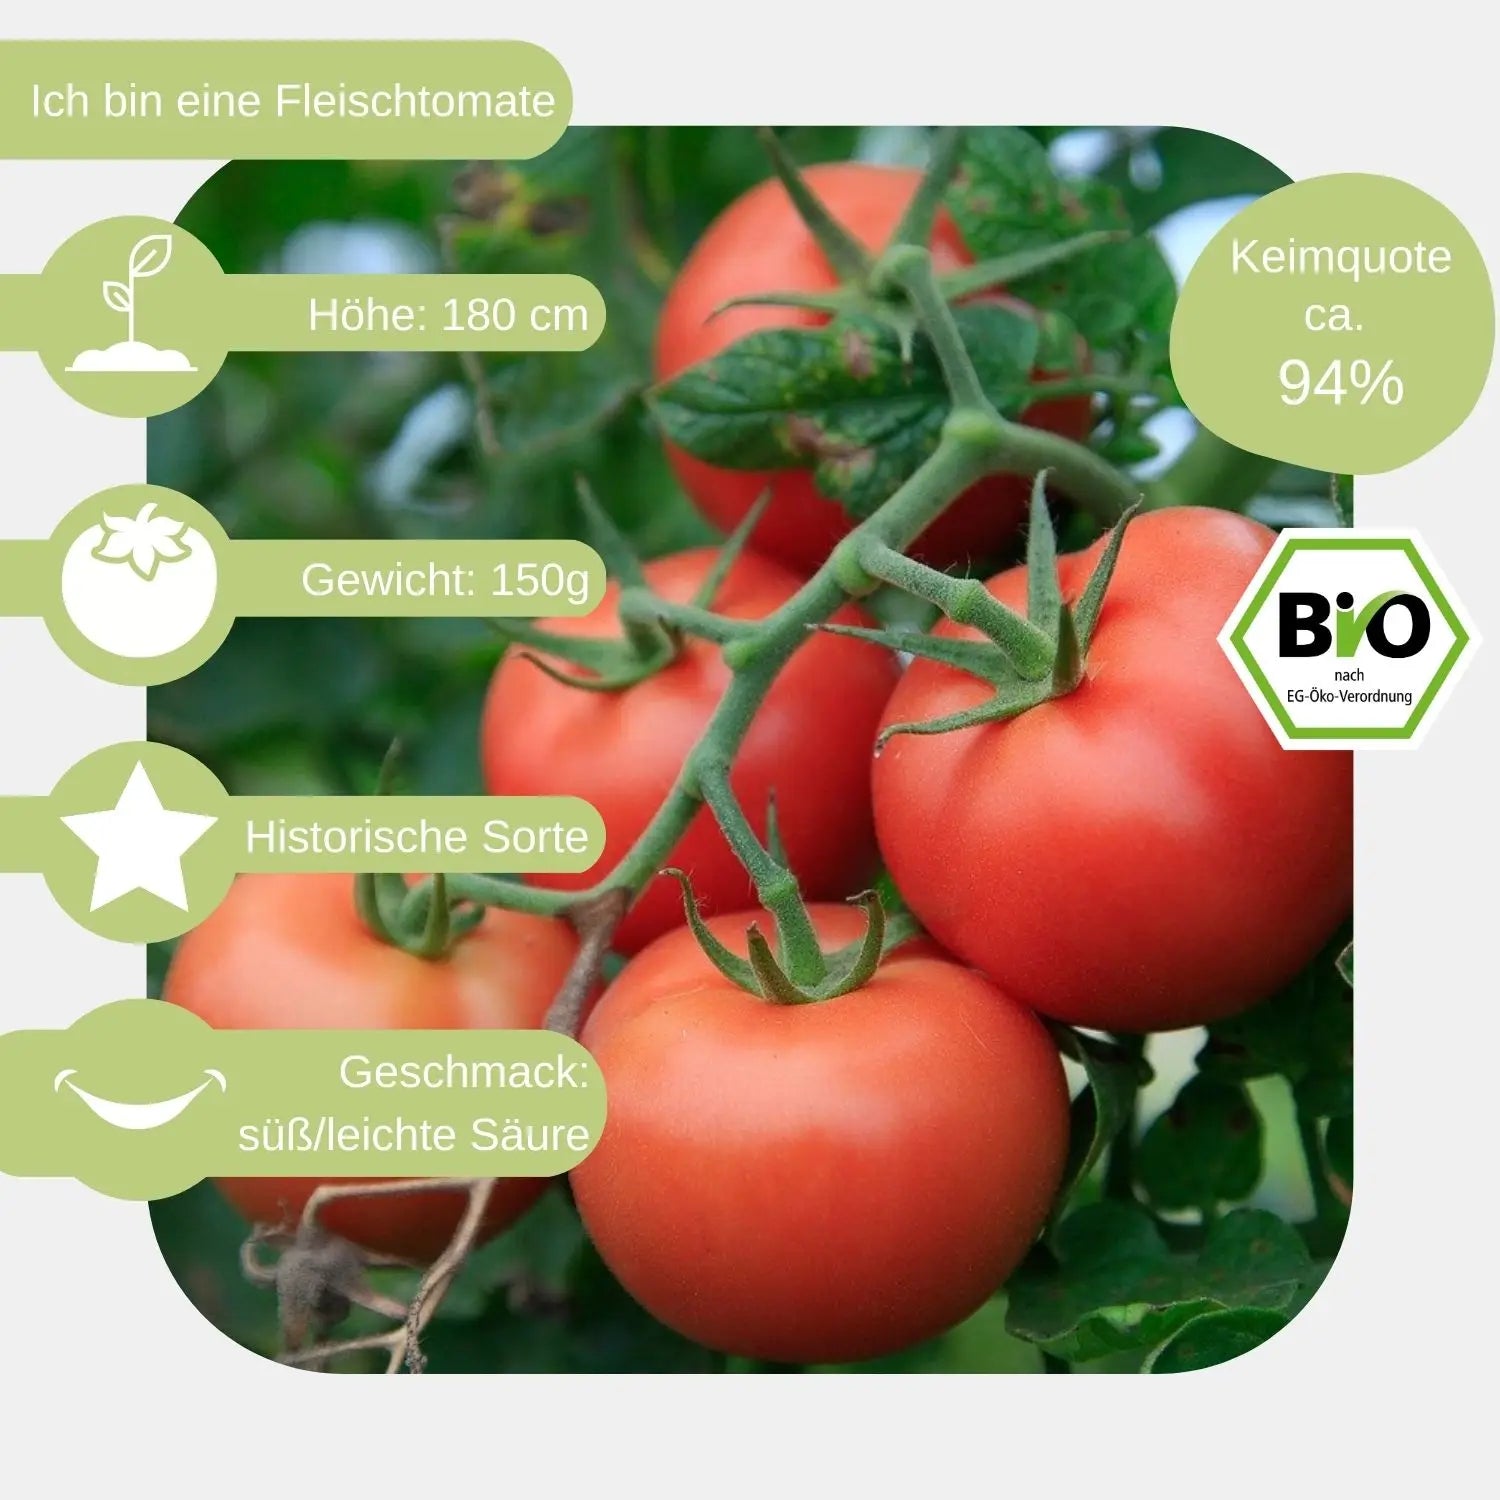 Bio-Fleischtomate-Berner-Rose-Samen-eigenschaften